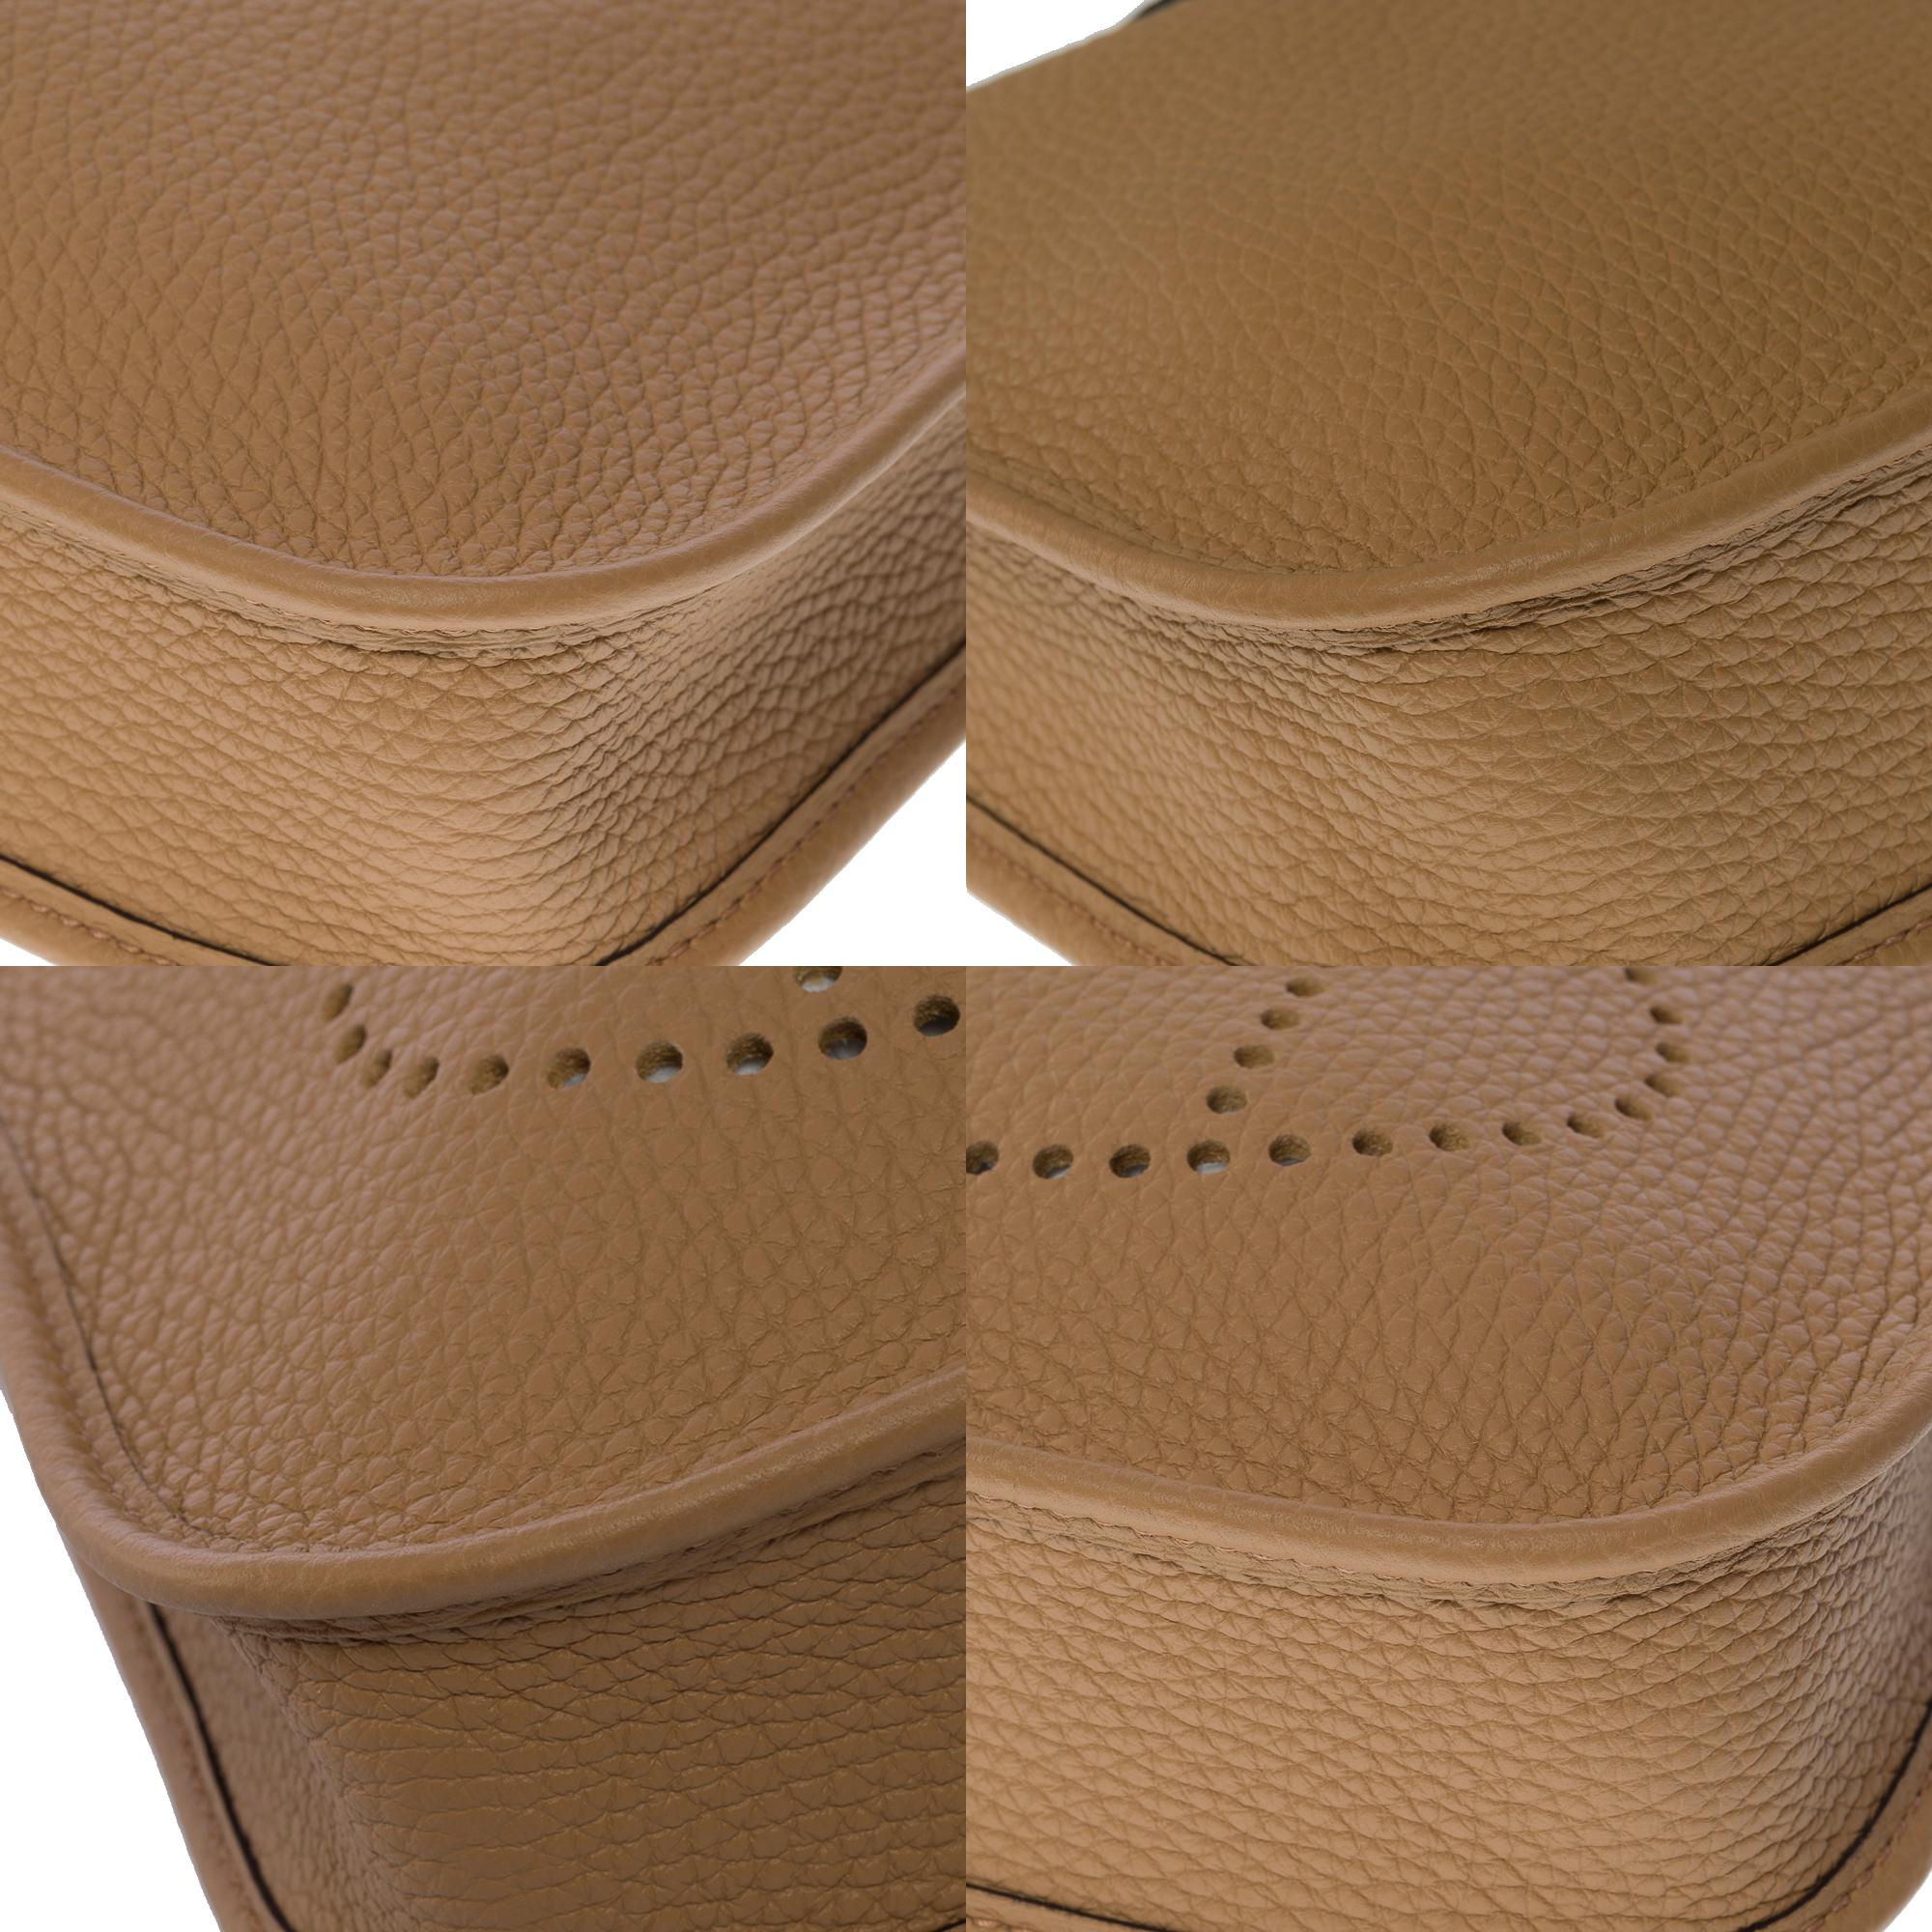 New Hermès Evelyne TPM shoulder bag in beige Taurillon Clemence leather, SHW 3